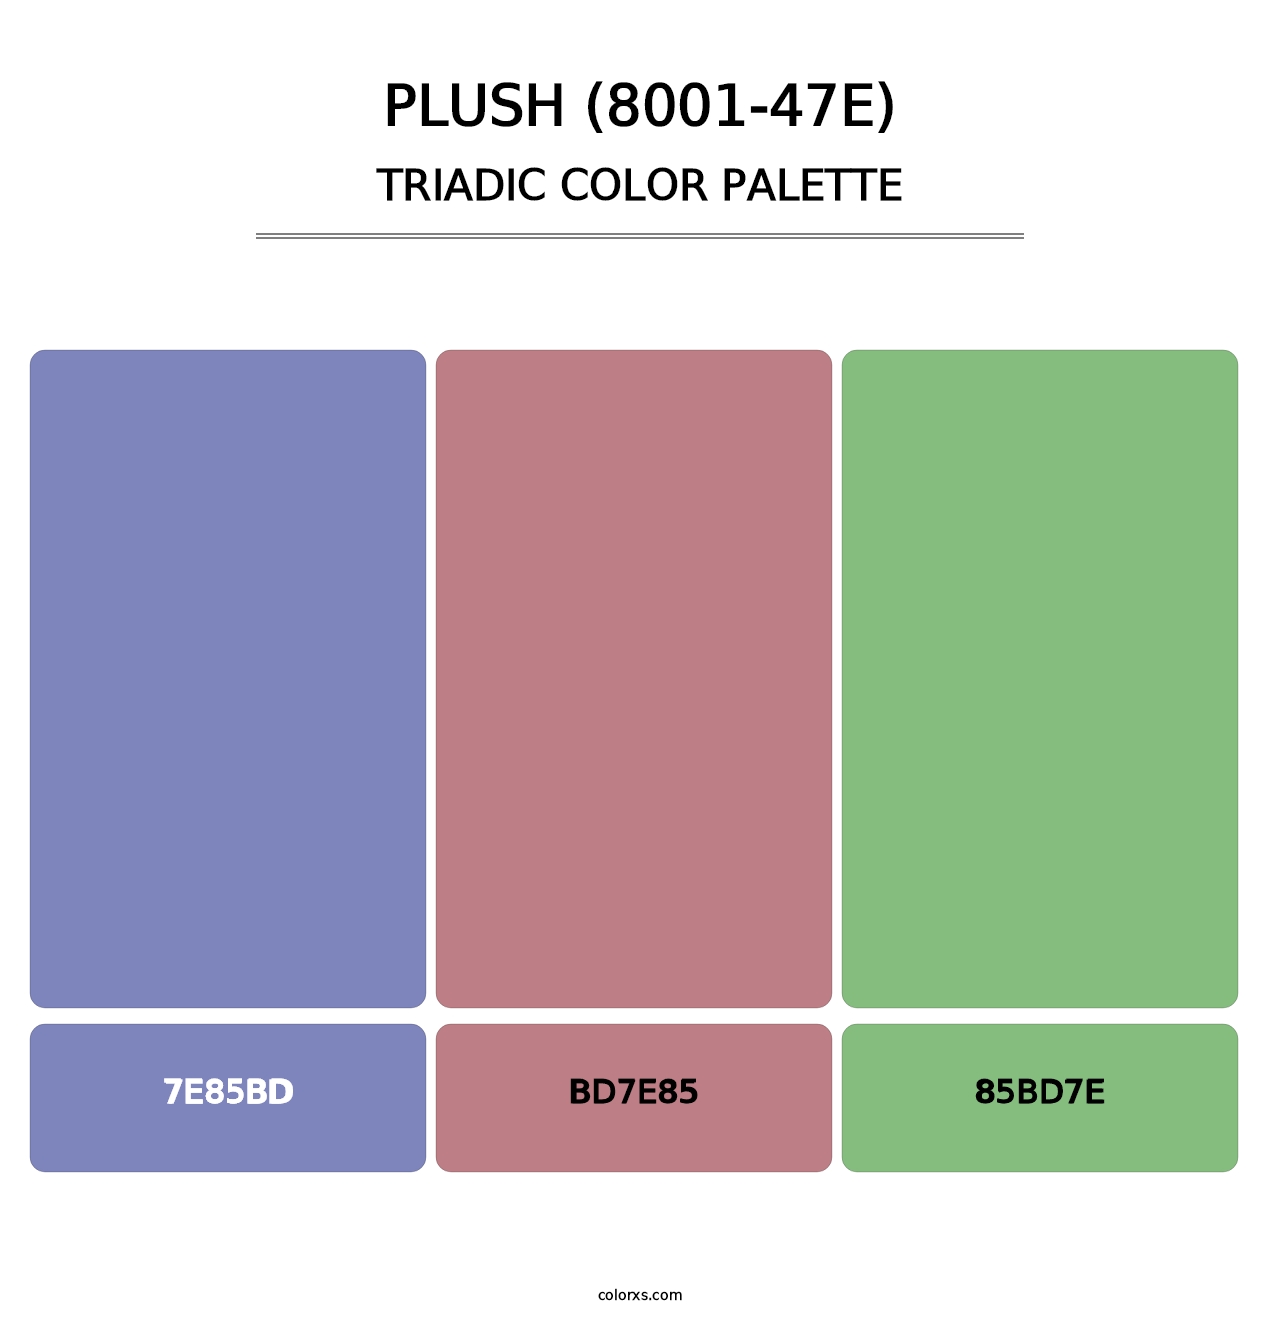 Plush (8001-47E) - Triadic Color Palette